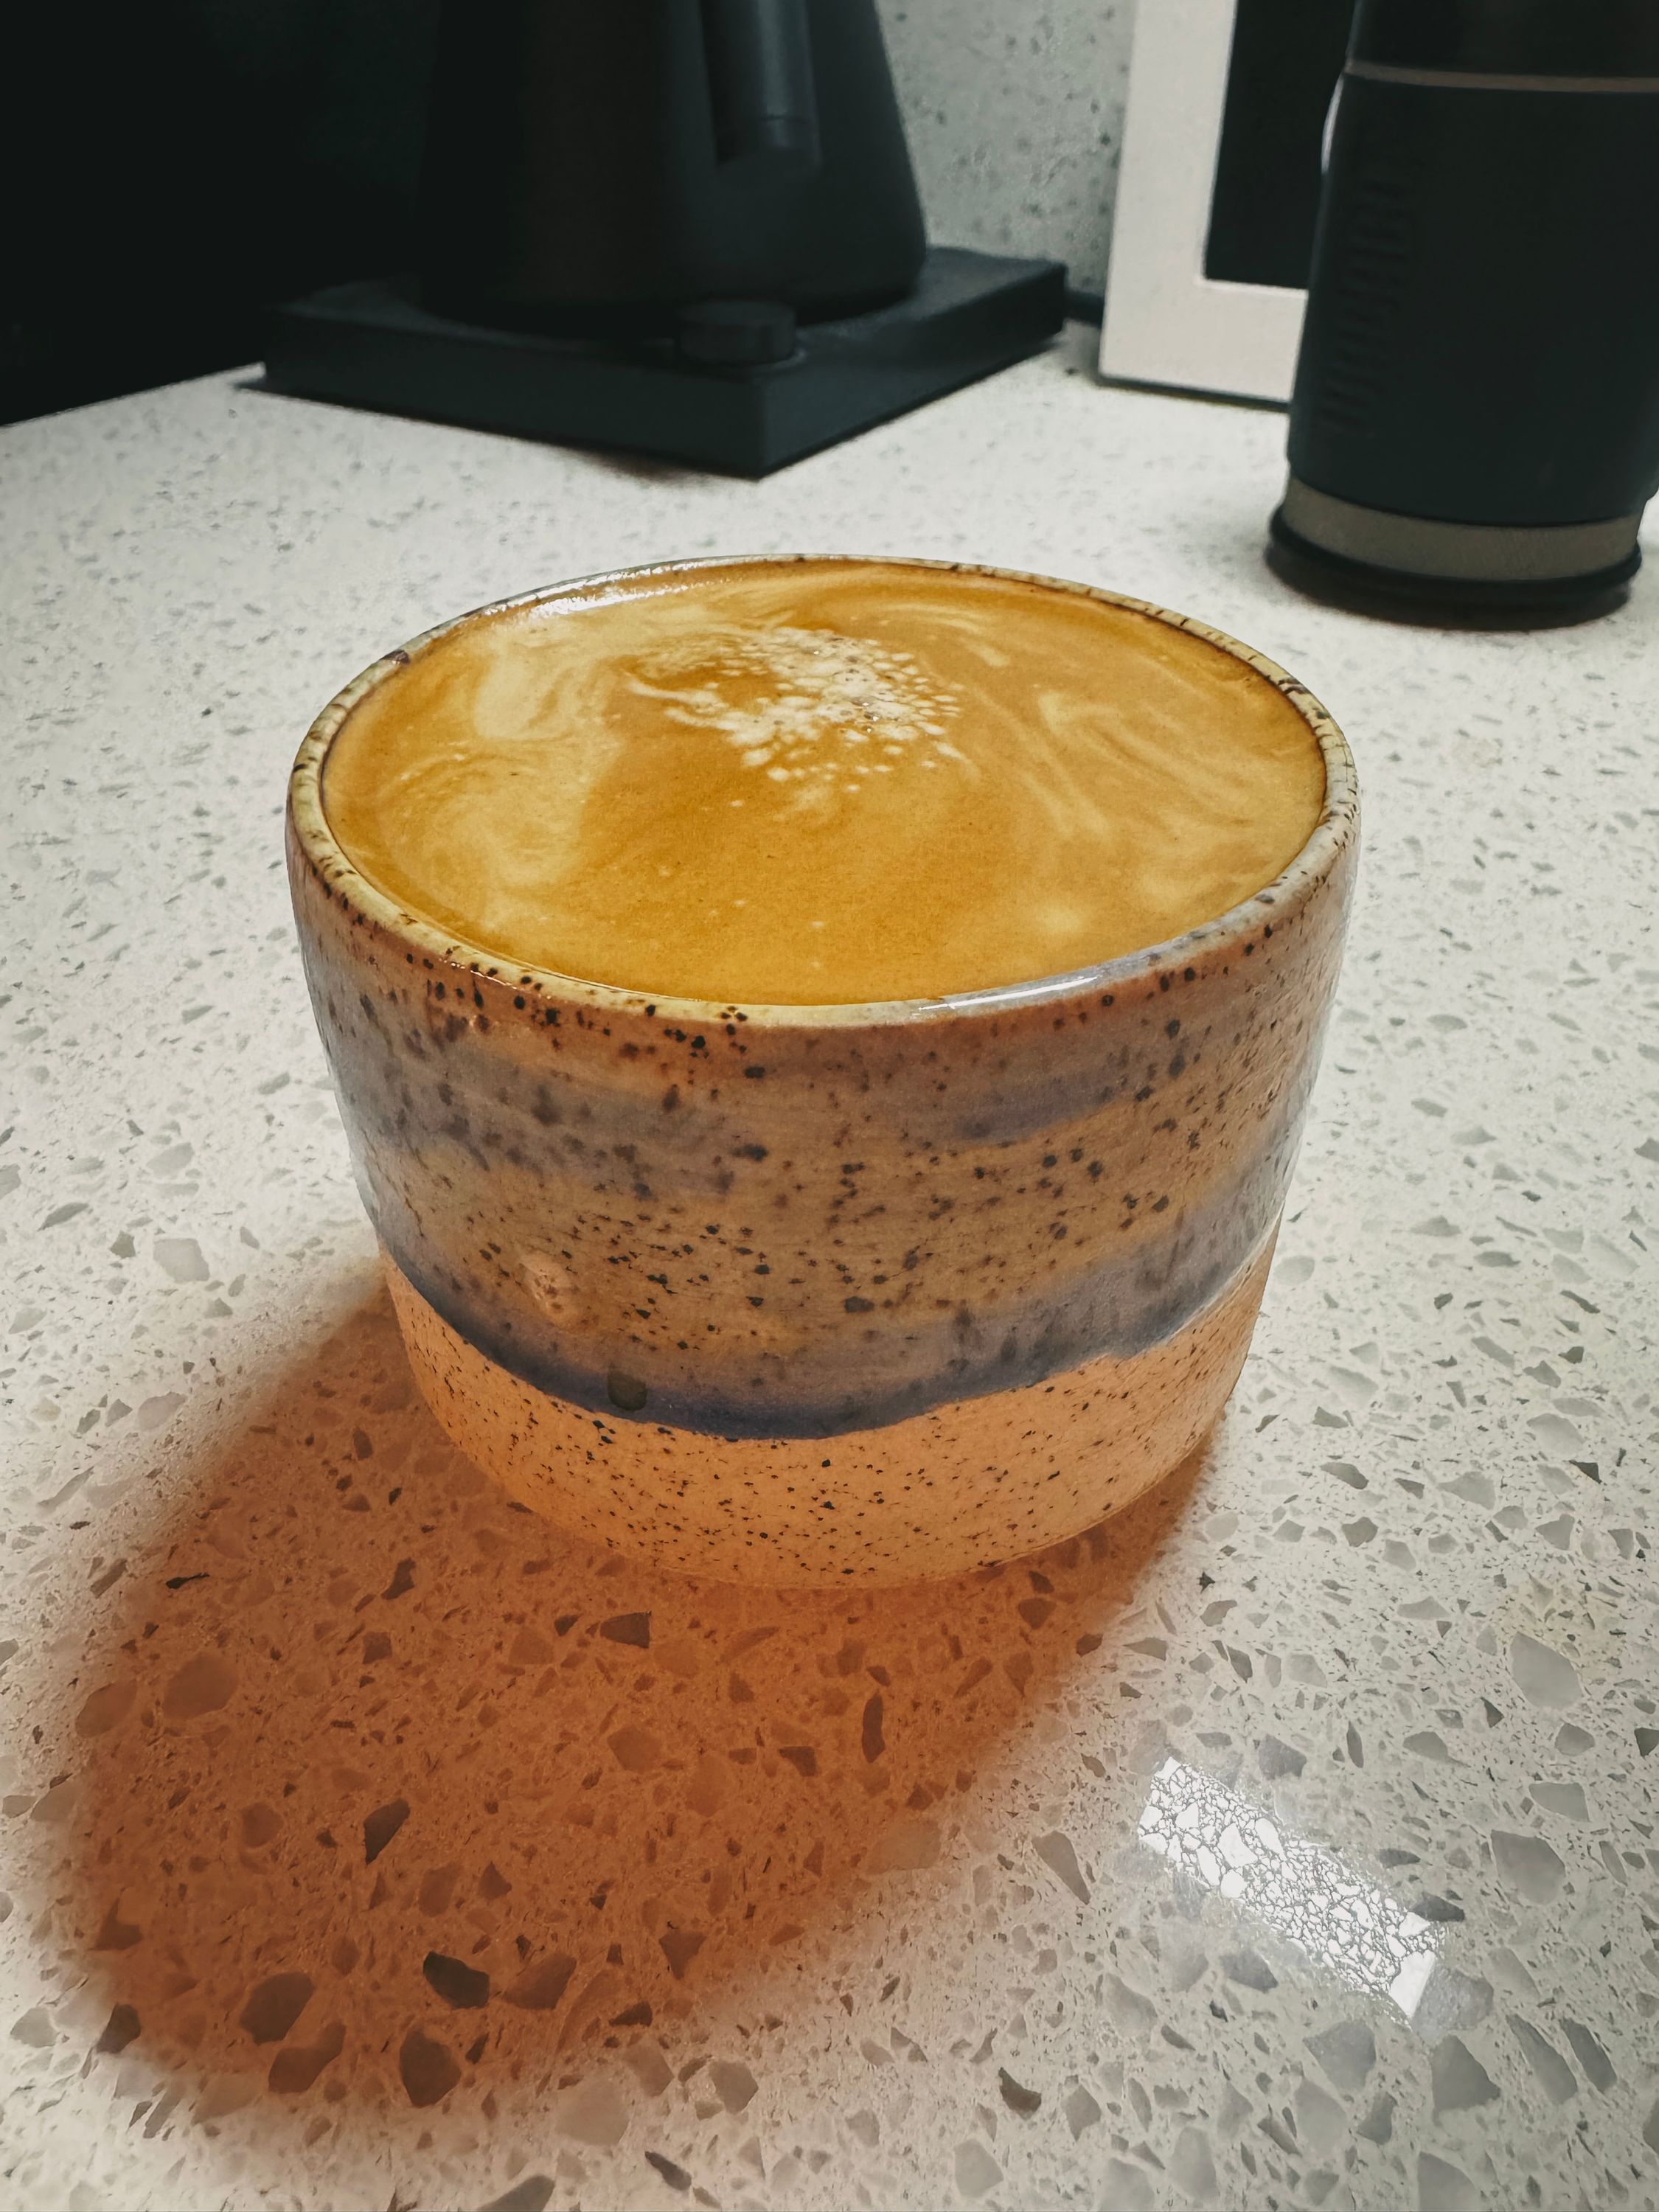 Picopresso crafted espresso